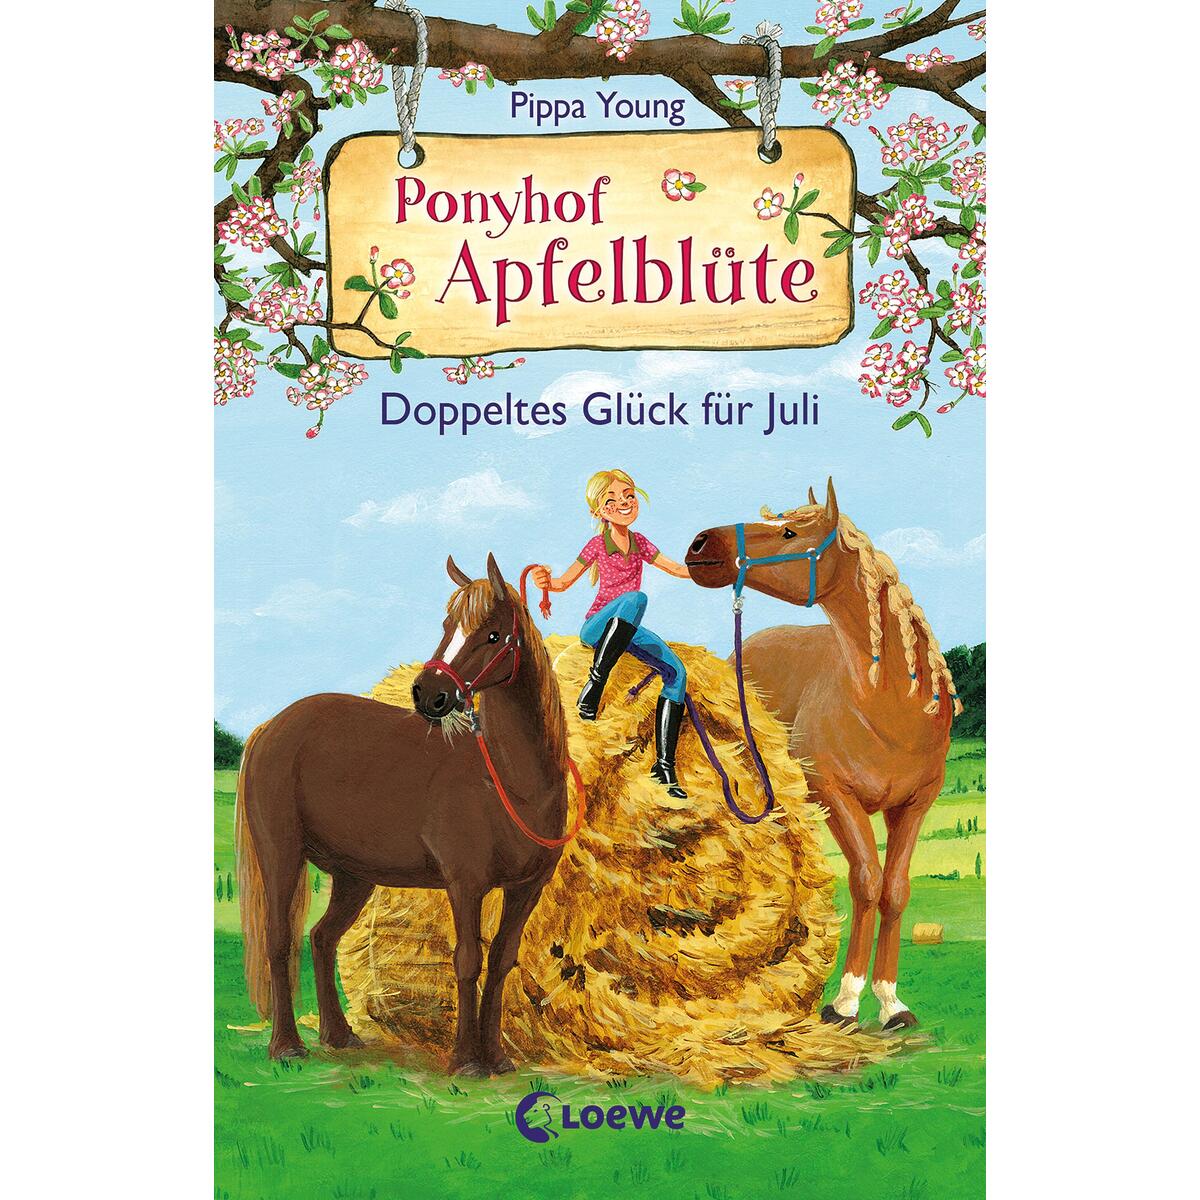 Ponyhof Apfelblüte (Band 21) - Doppeltes Glück für Juli von Loewe Verlag GmbH